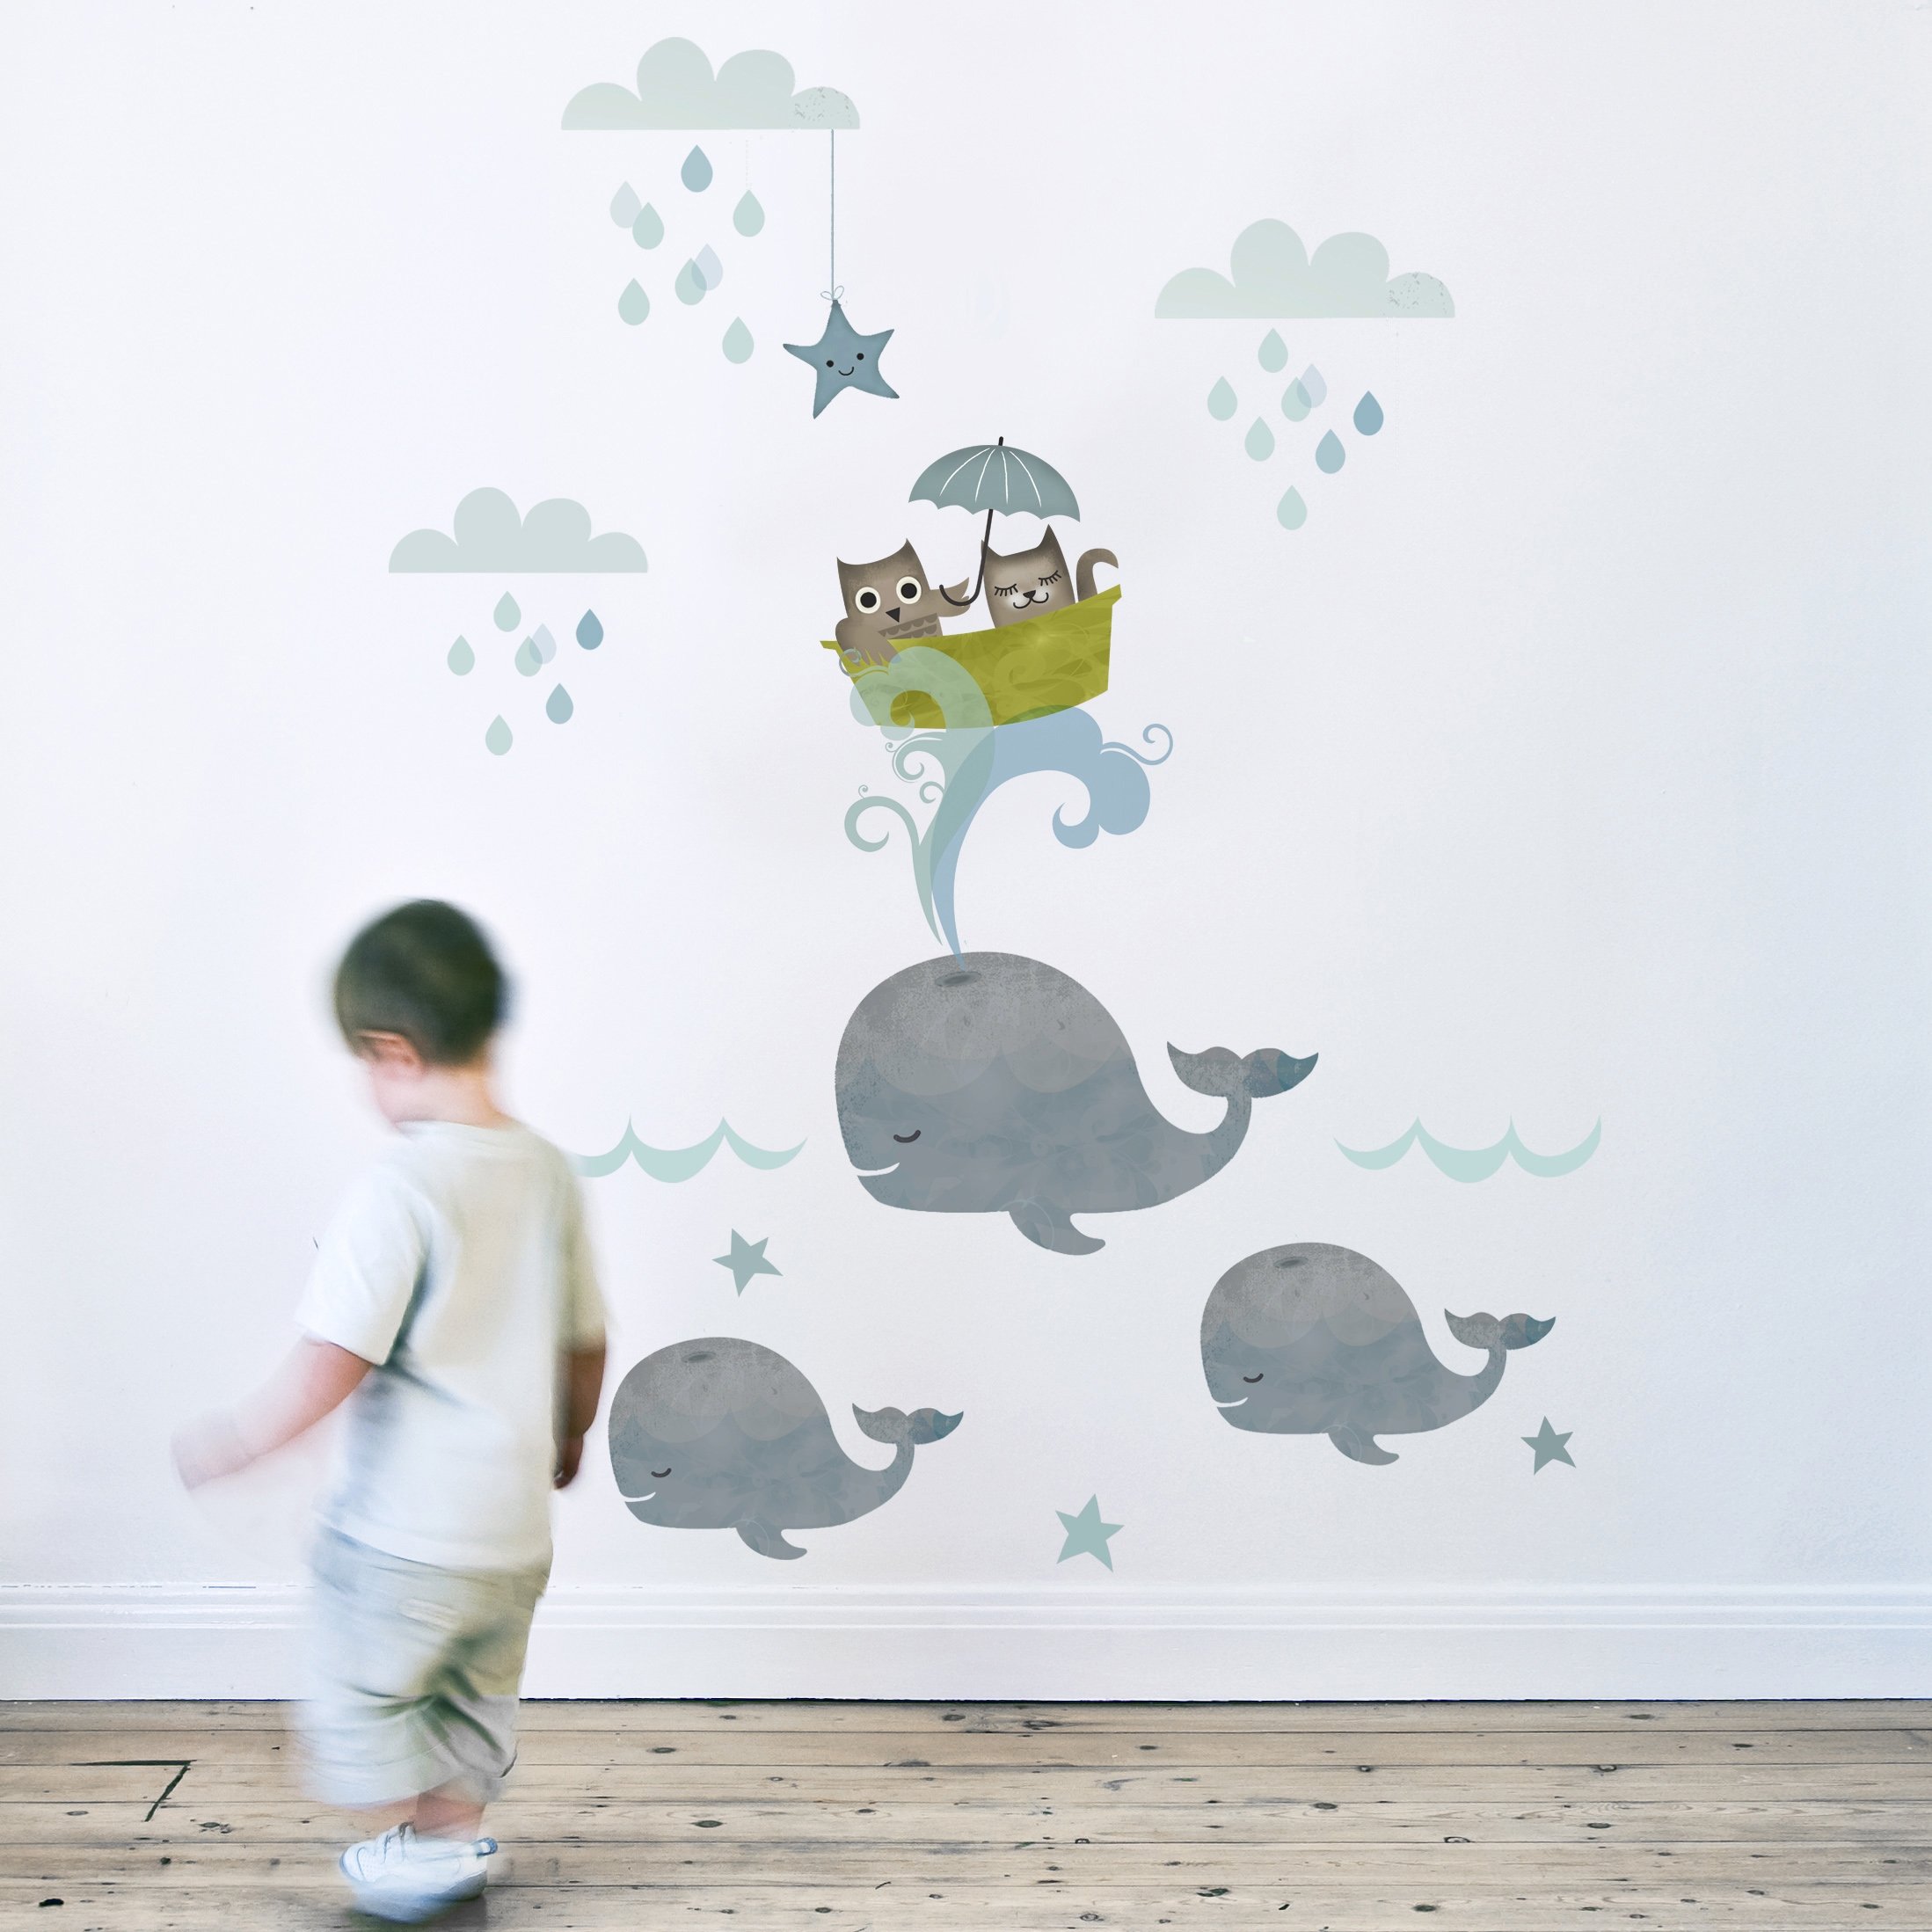 Рисуем на стене в детской